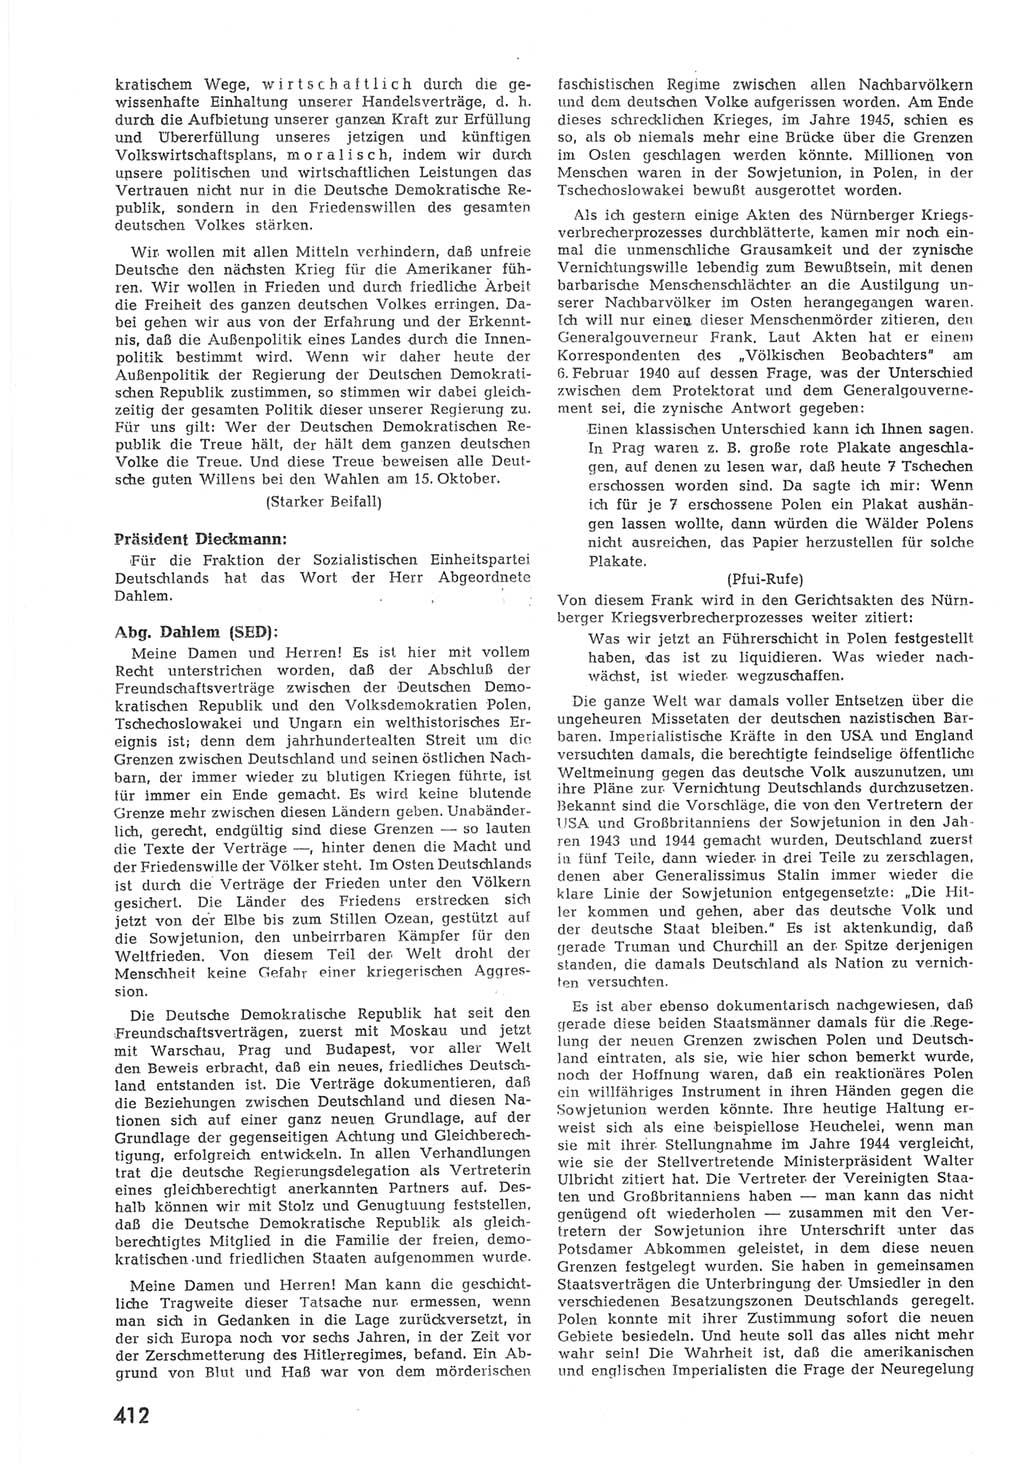 Provisorische Volkskammer (VK) der Deutschen Demokratischen Republik (DDR) 1949-1950, Dokument 430 (Prov. VK DDR 1949-1950, Dok. 430)